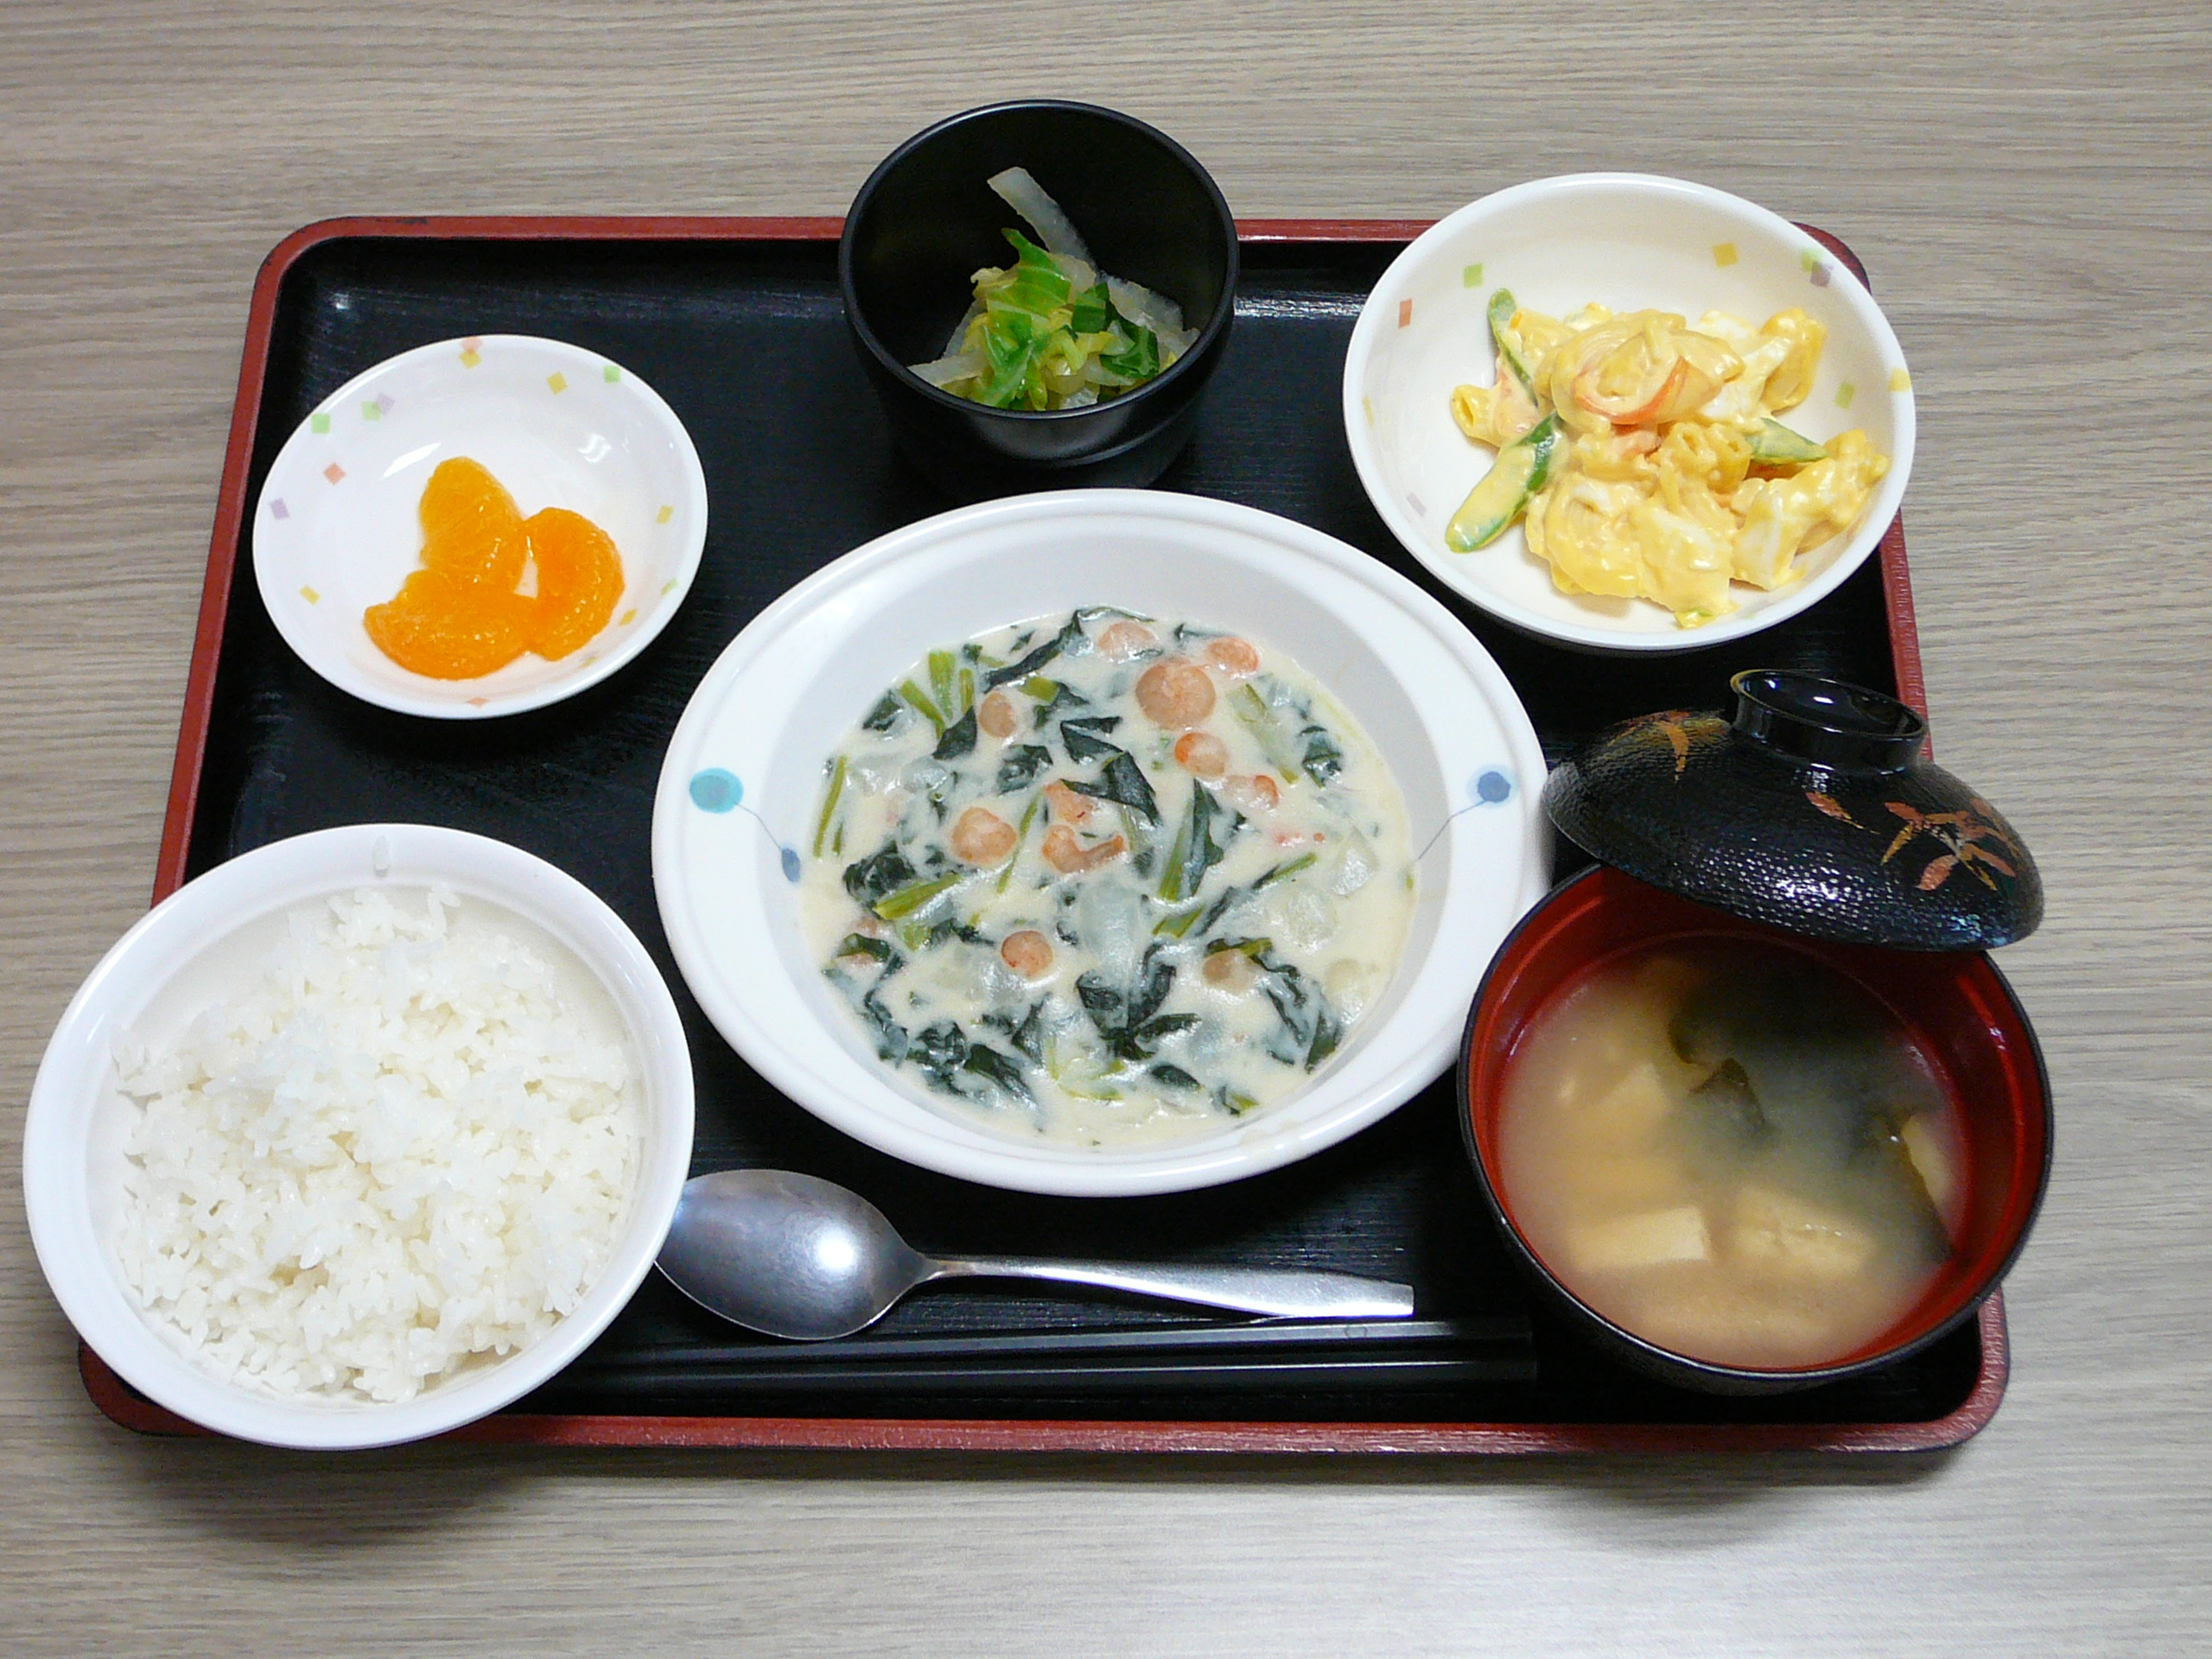 今日のお昼は エビと小松菜のミルク煮 卵サラダ 和え物 味噌汁 果物です